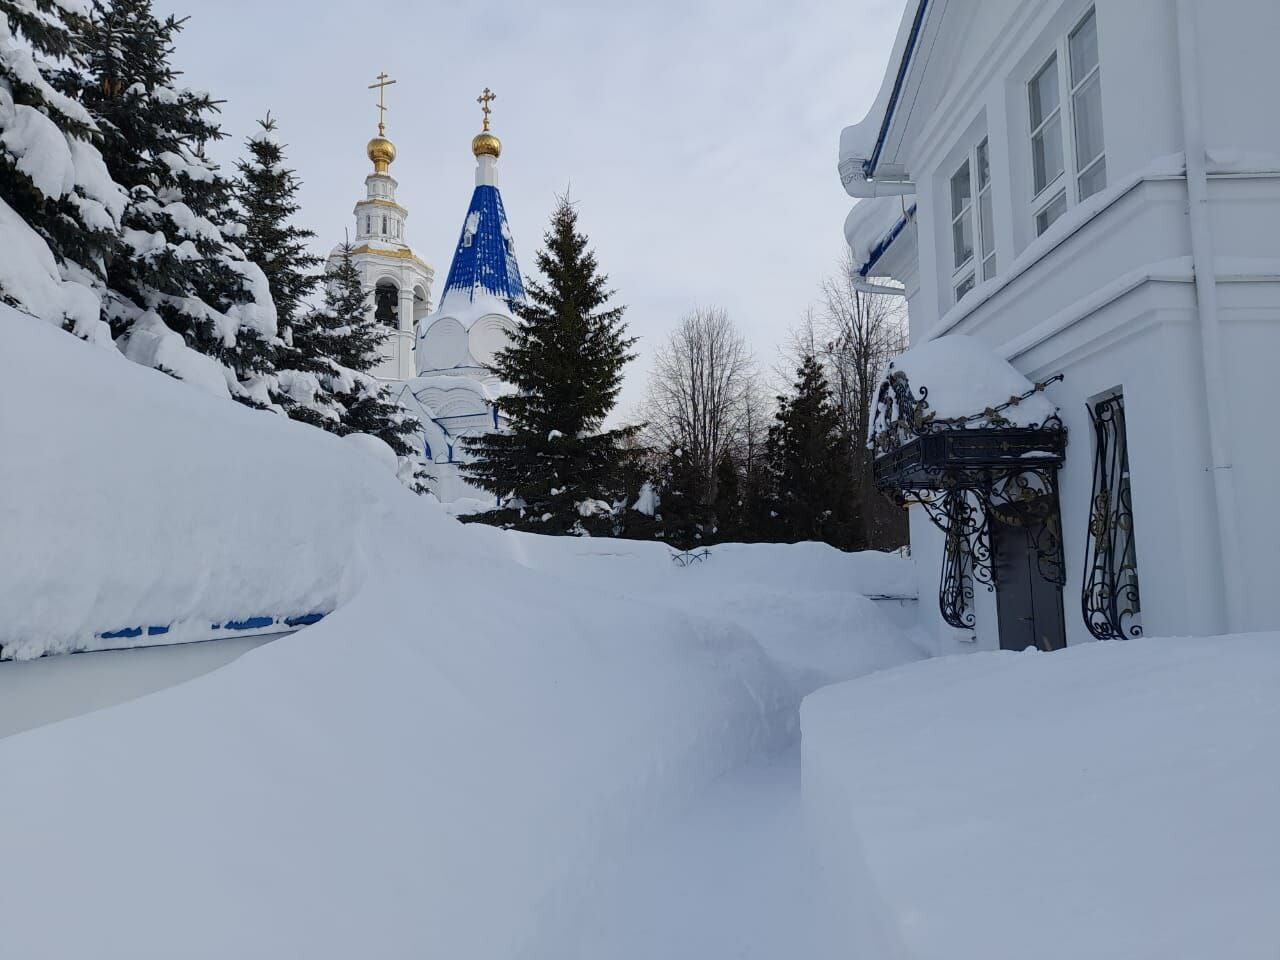 Из-за обильных снегопадов Зилантов женский монастырь нуждается в помощи